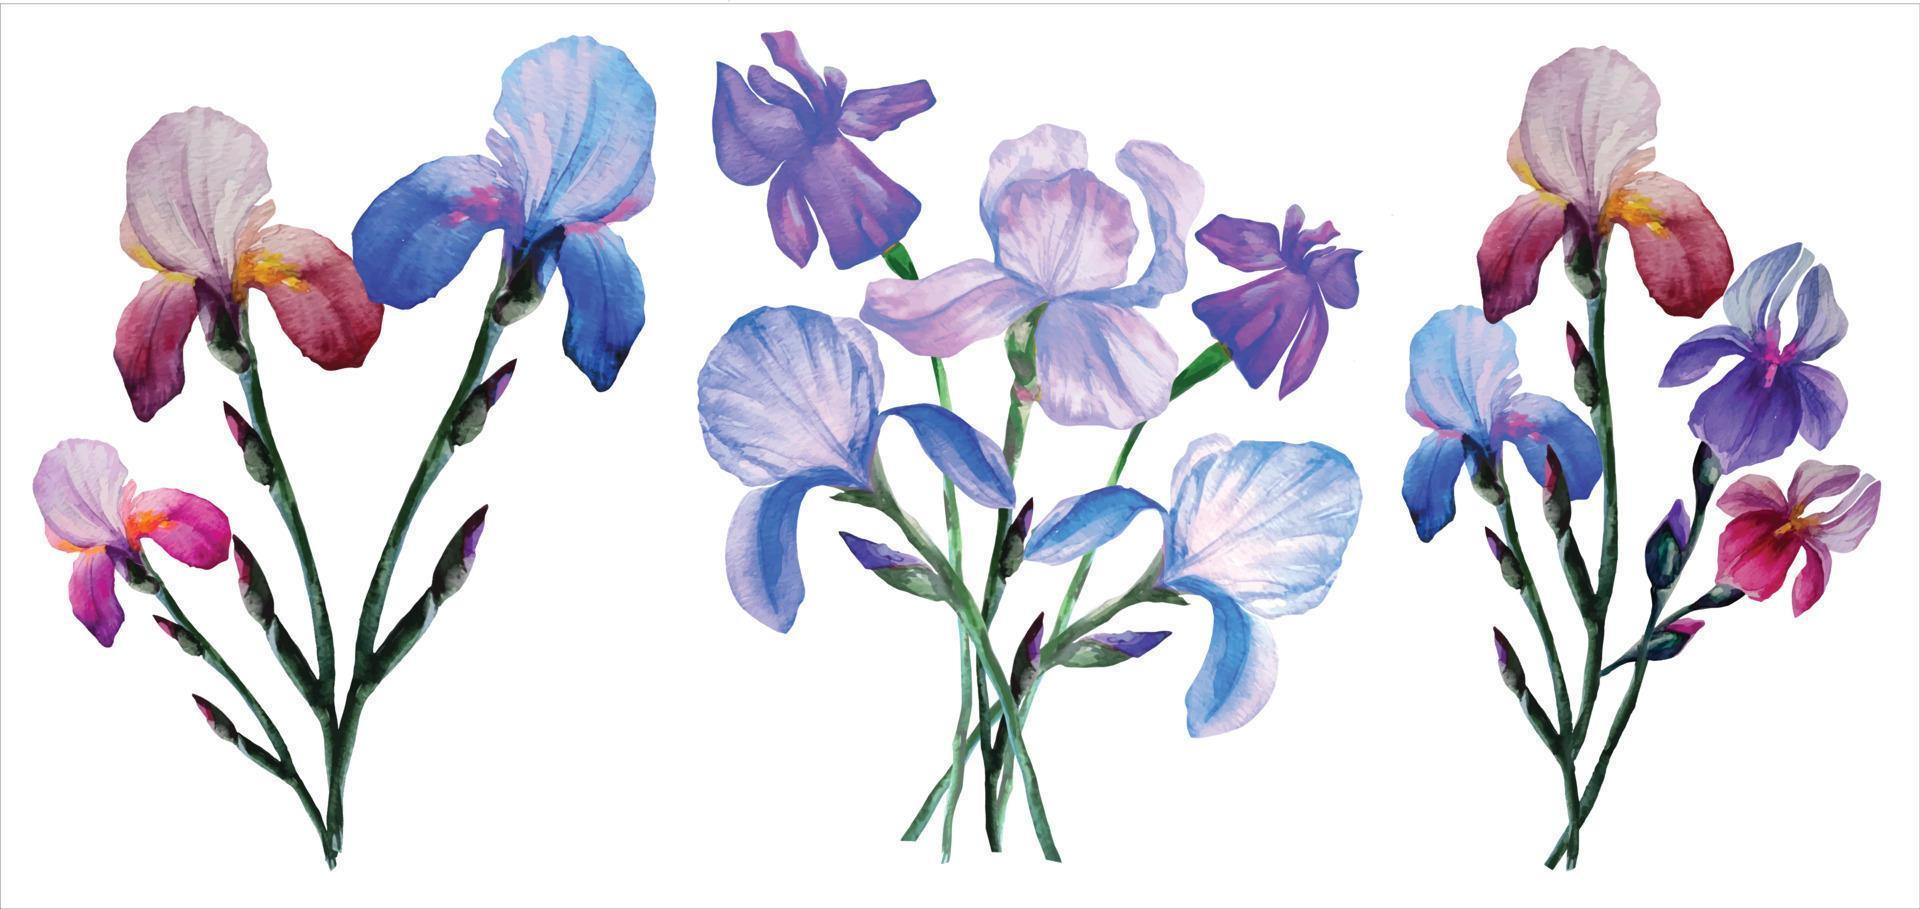 blühende irisblumen in botanischen aquarellillustration der blumensträuße vektor